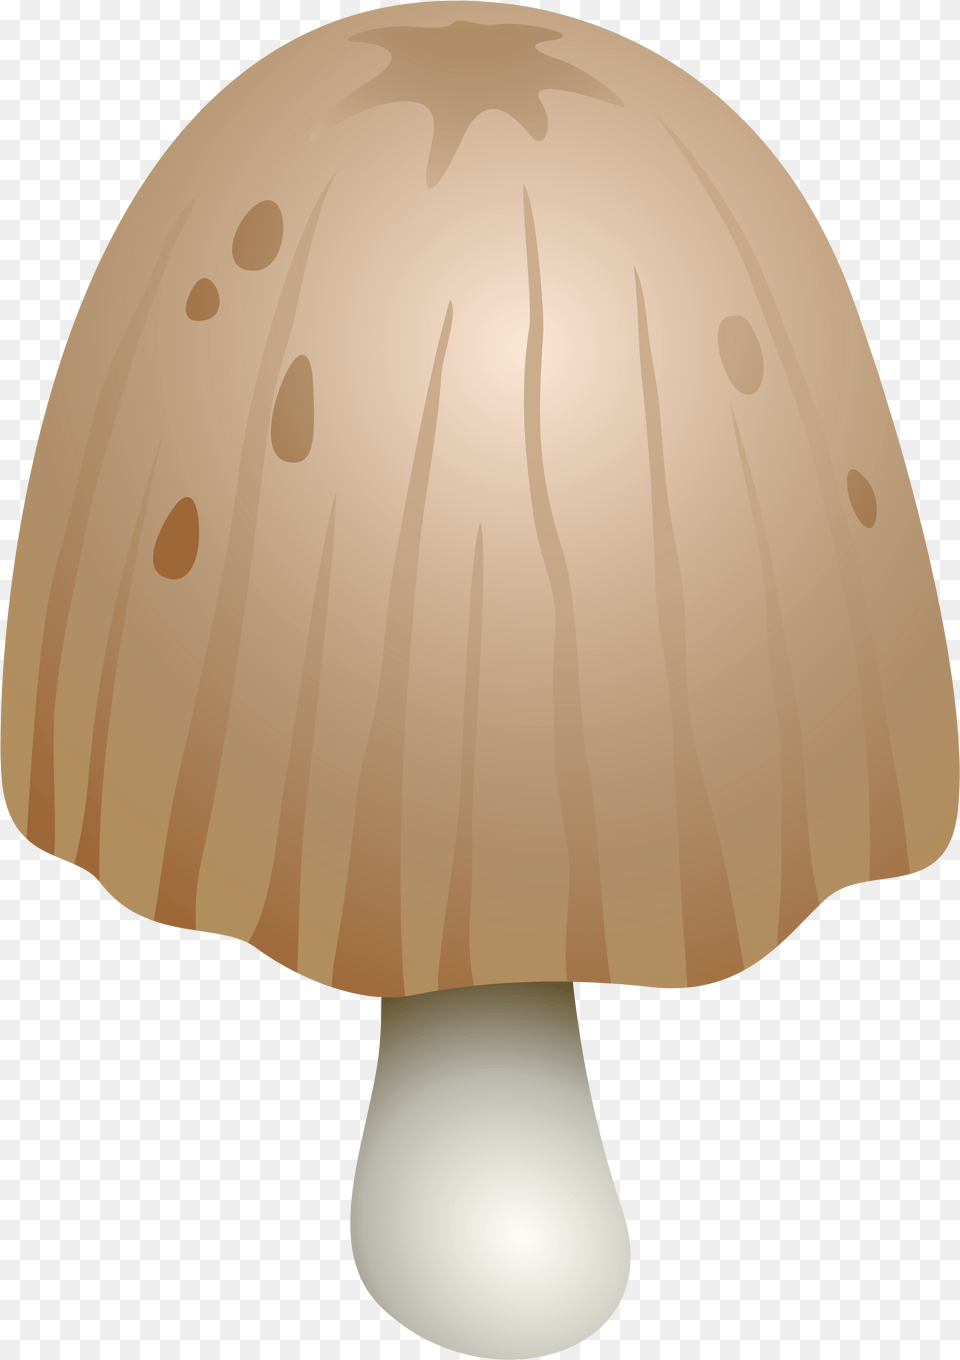 Coprinus Comatus Mushroom Clipart, Fungus, Plant, Agaric, Amanita Png Image